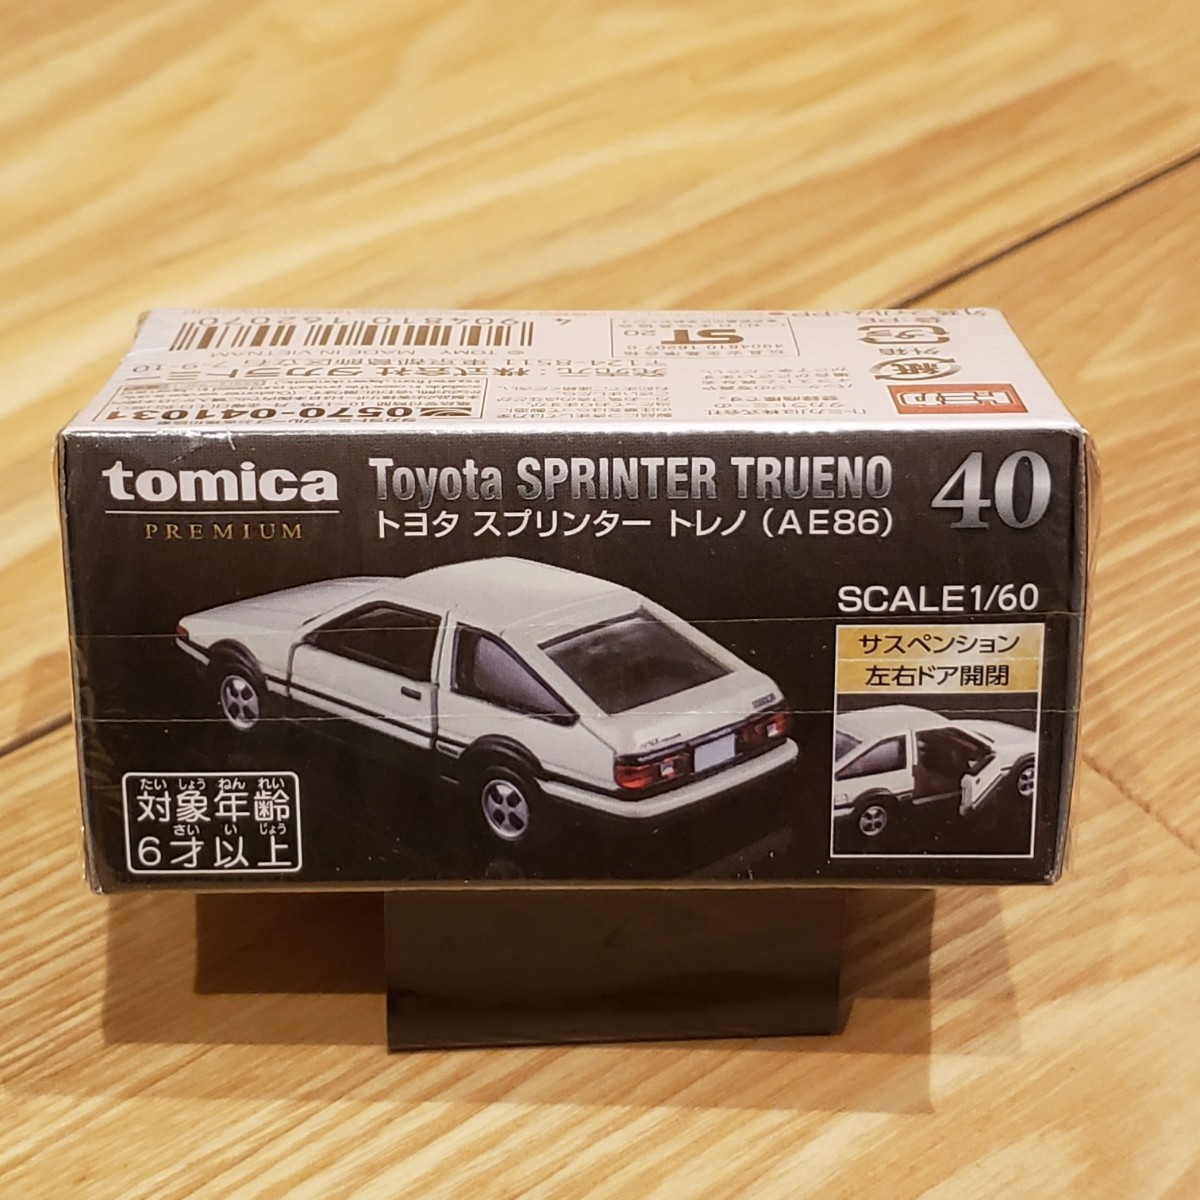 トミカプレミアム トヨタ スプリンター トレノ 廃盤トミカ AE86 ハチロク 未開封品_画像2